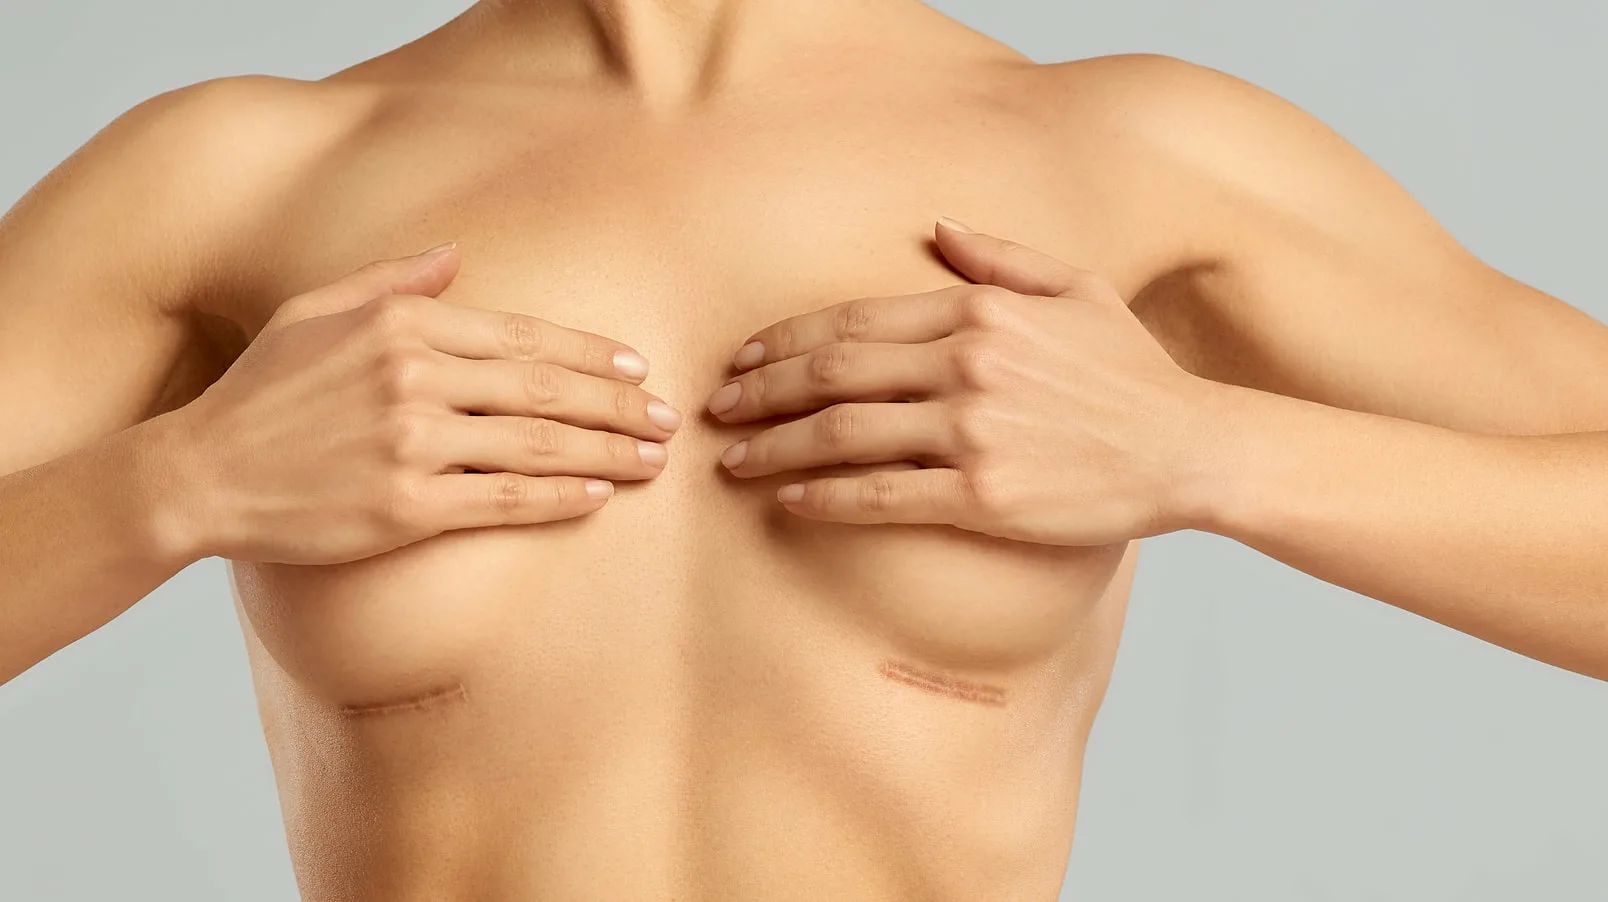 груди у женщин в картинках фото 52